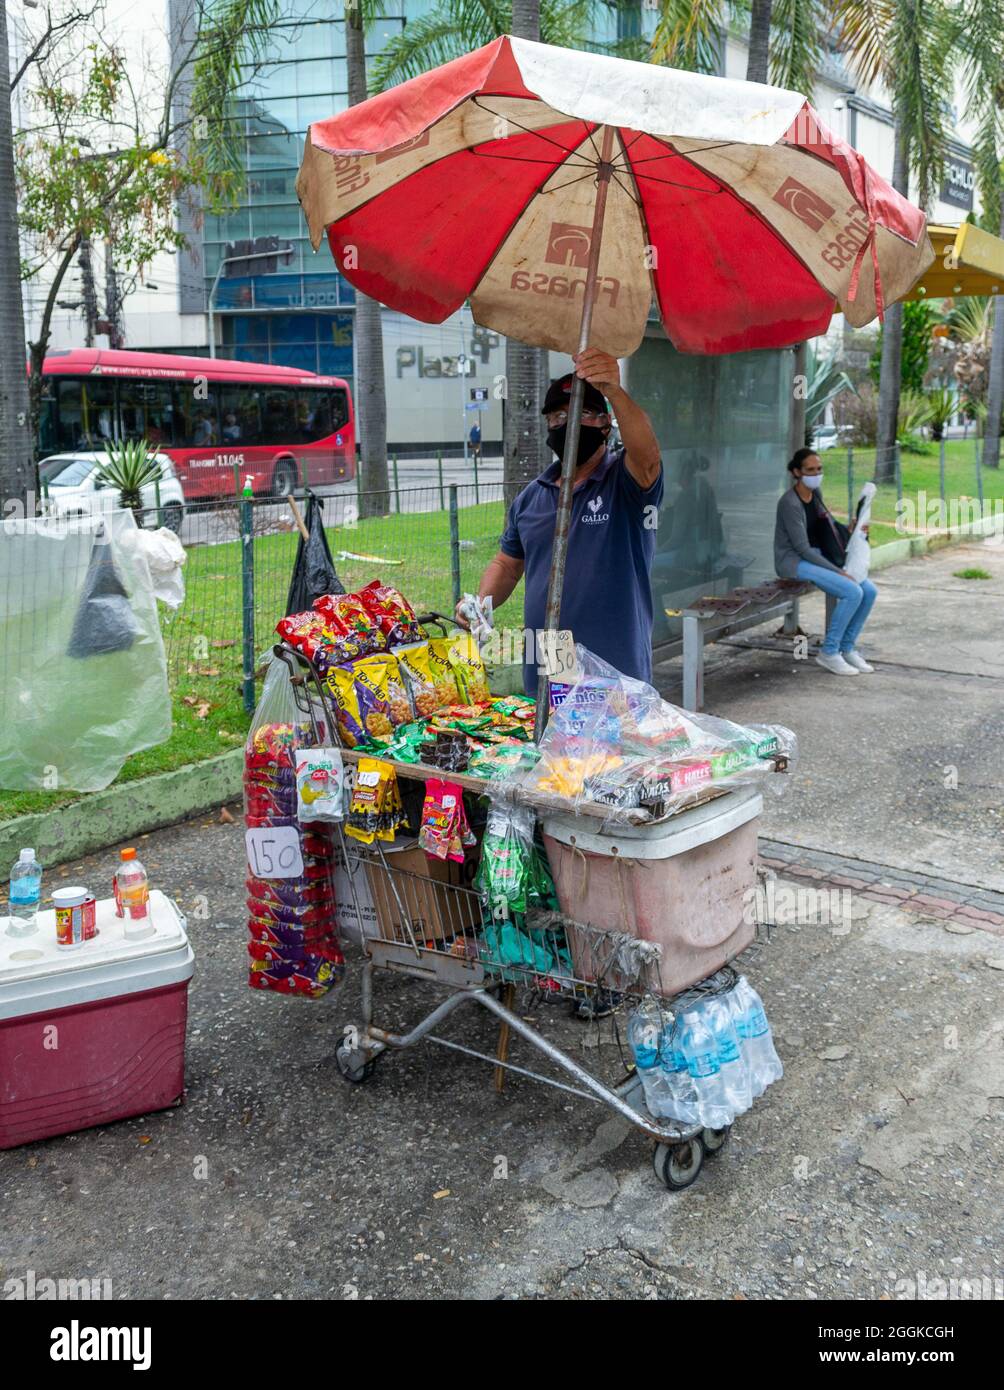 Un uomo che vende piccoli oggetti in una fermata di autobus a Nitreoi, Rio de Janeiro, Brasile. Stile di vita di persone reali. Foto Stock